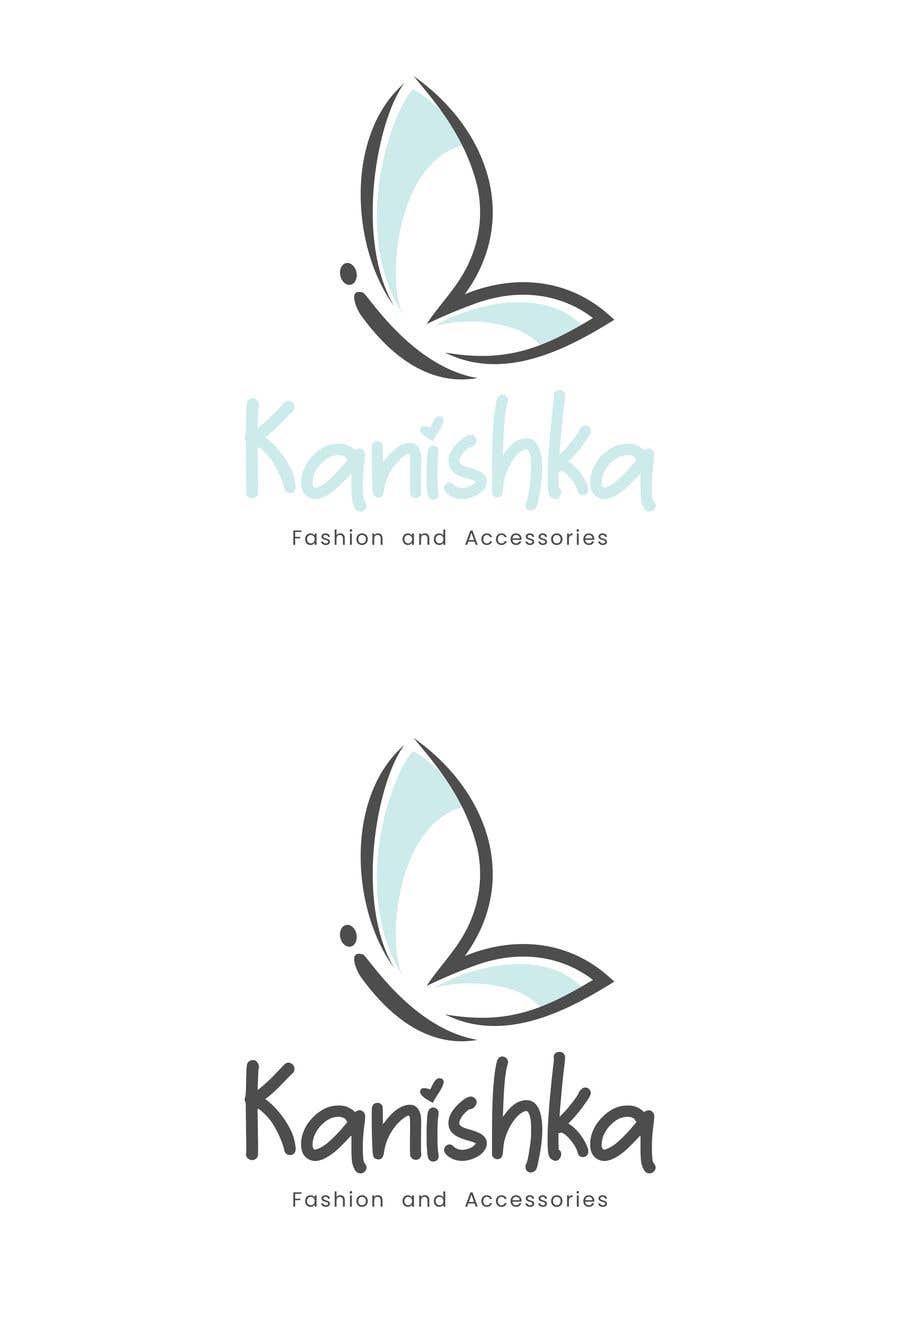 Kilpailutyö #182 kilpailussa                                                 Kanishka fashion and accessories
                                            